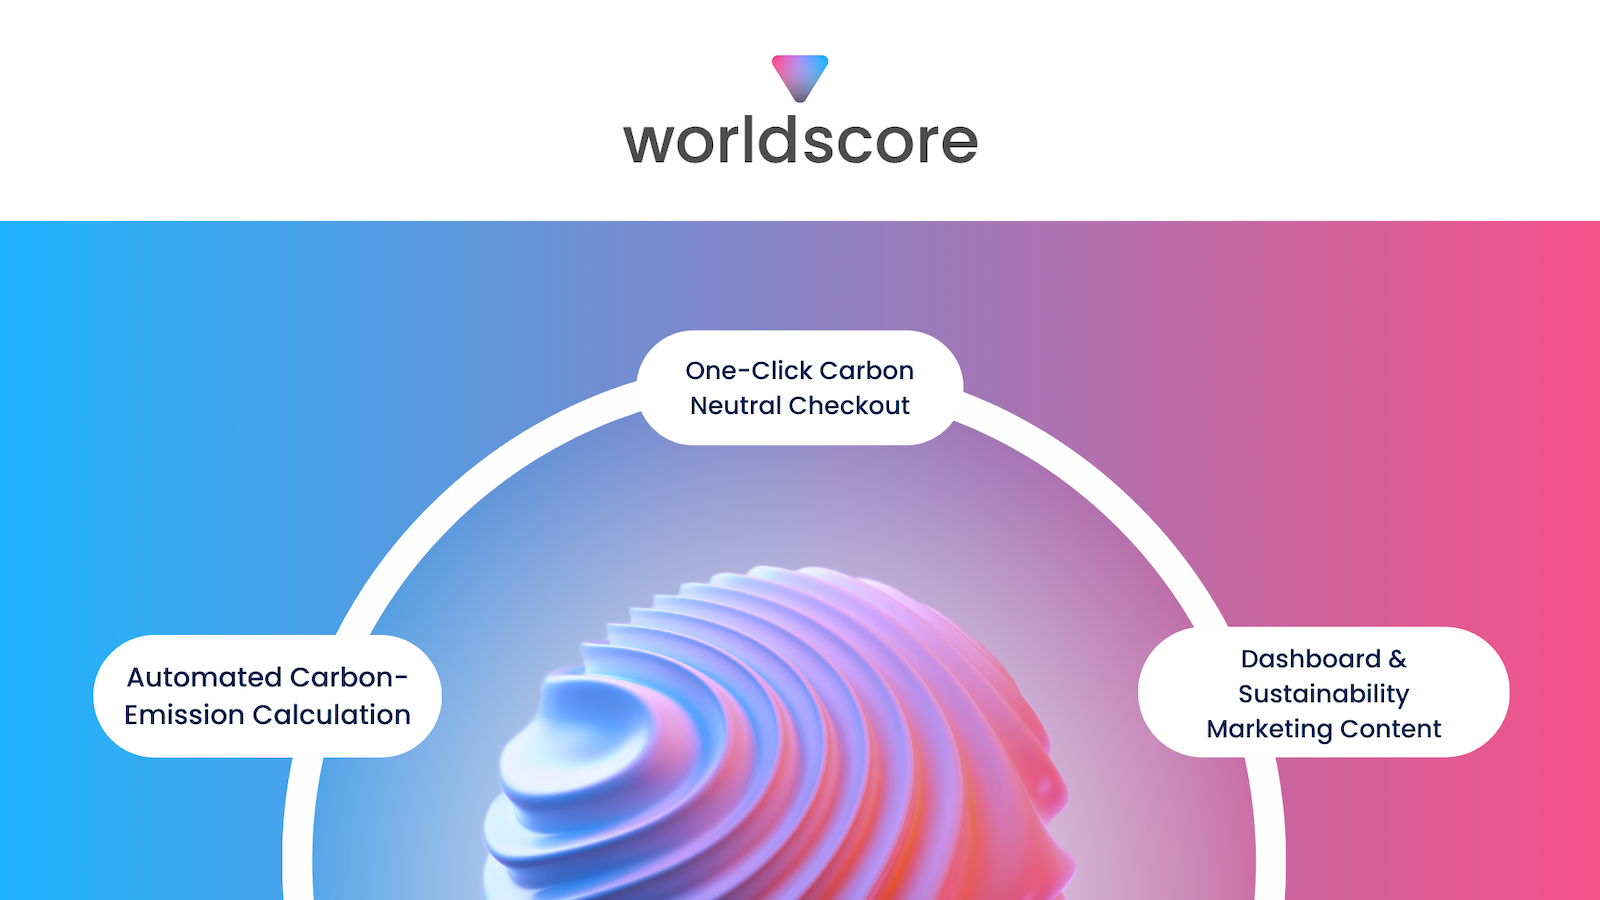 Logo do worldscore em cima de uma esfera ondulada descrevendo os recursos